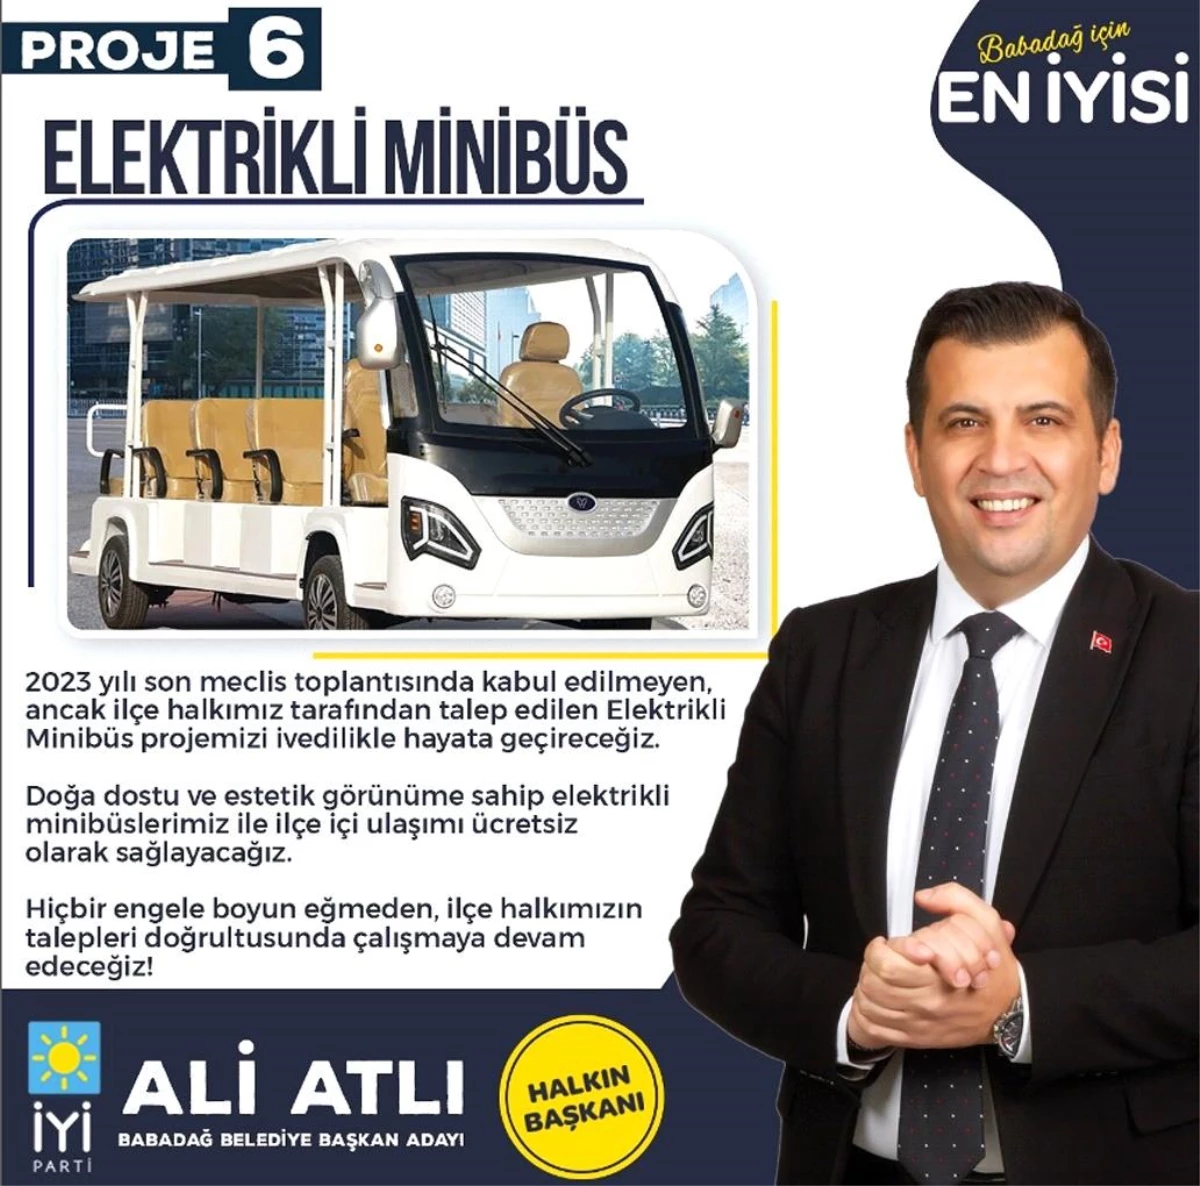 Babadağ Belediyesi Elektrikli Minibüs Projesini Yeni Dönemde Gerçekleştirecek